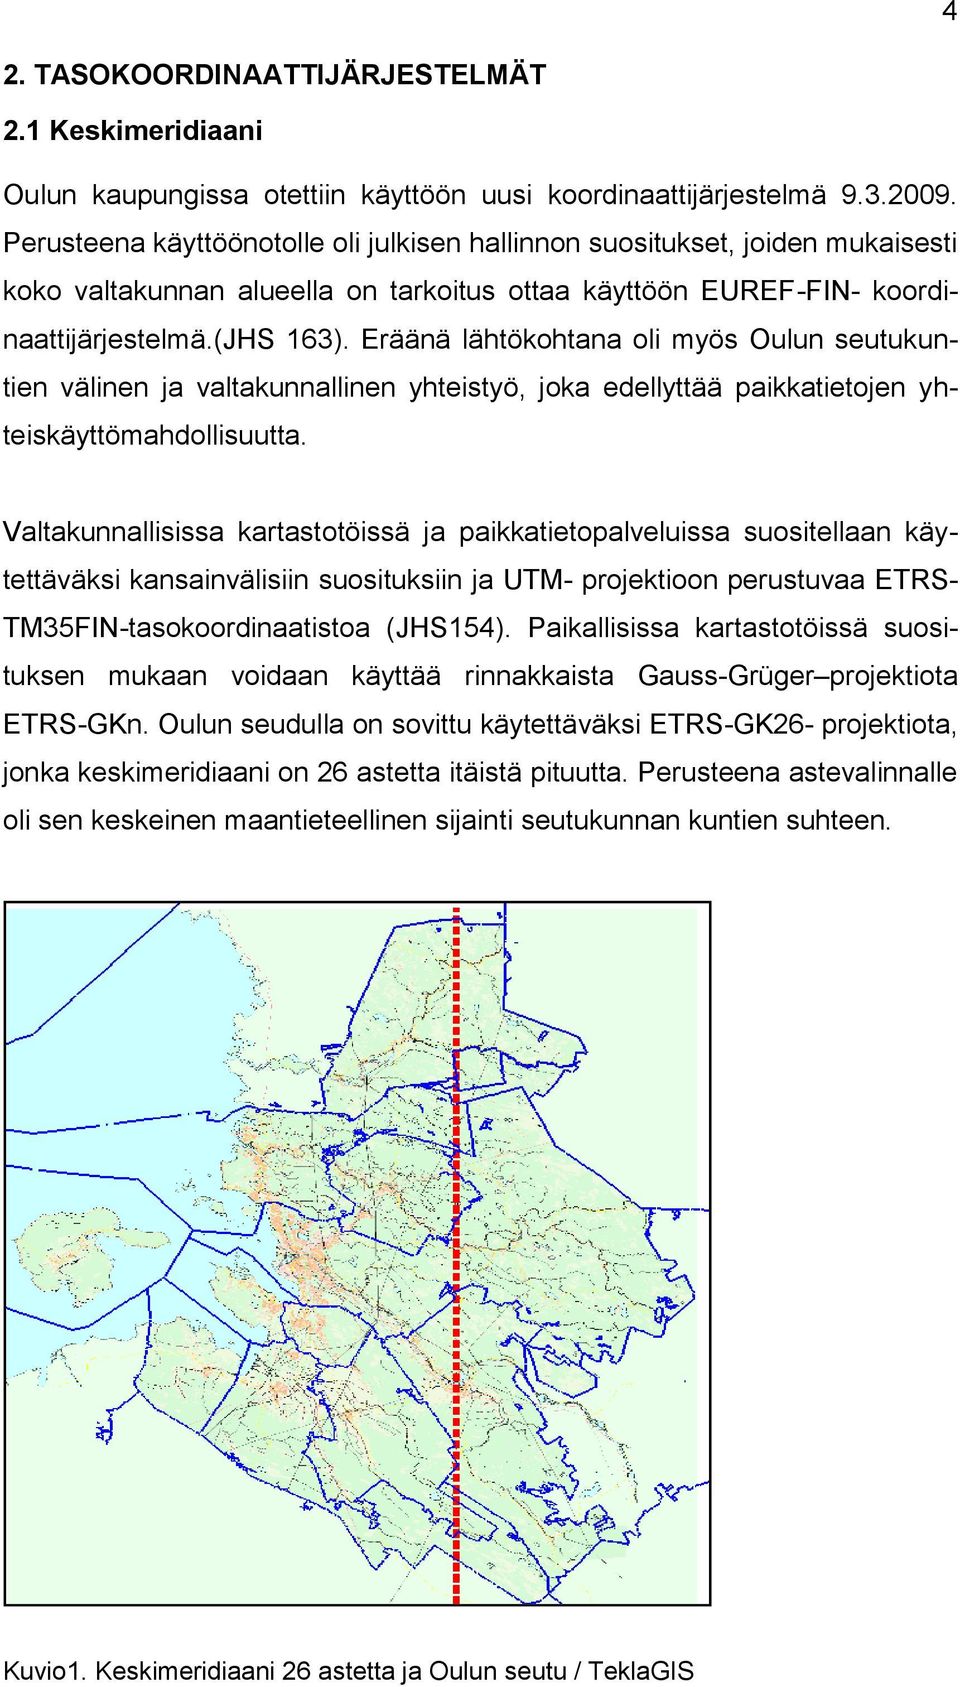 Eräänä lähtökohtana oli myös Oulun seutukuntien välinen ja valtakunnallinen yhteistyö, joka edellyttää paikkatietojen yhteiskäyttömahdollisuutta.